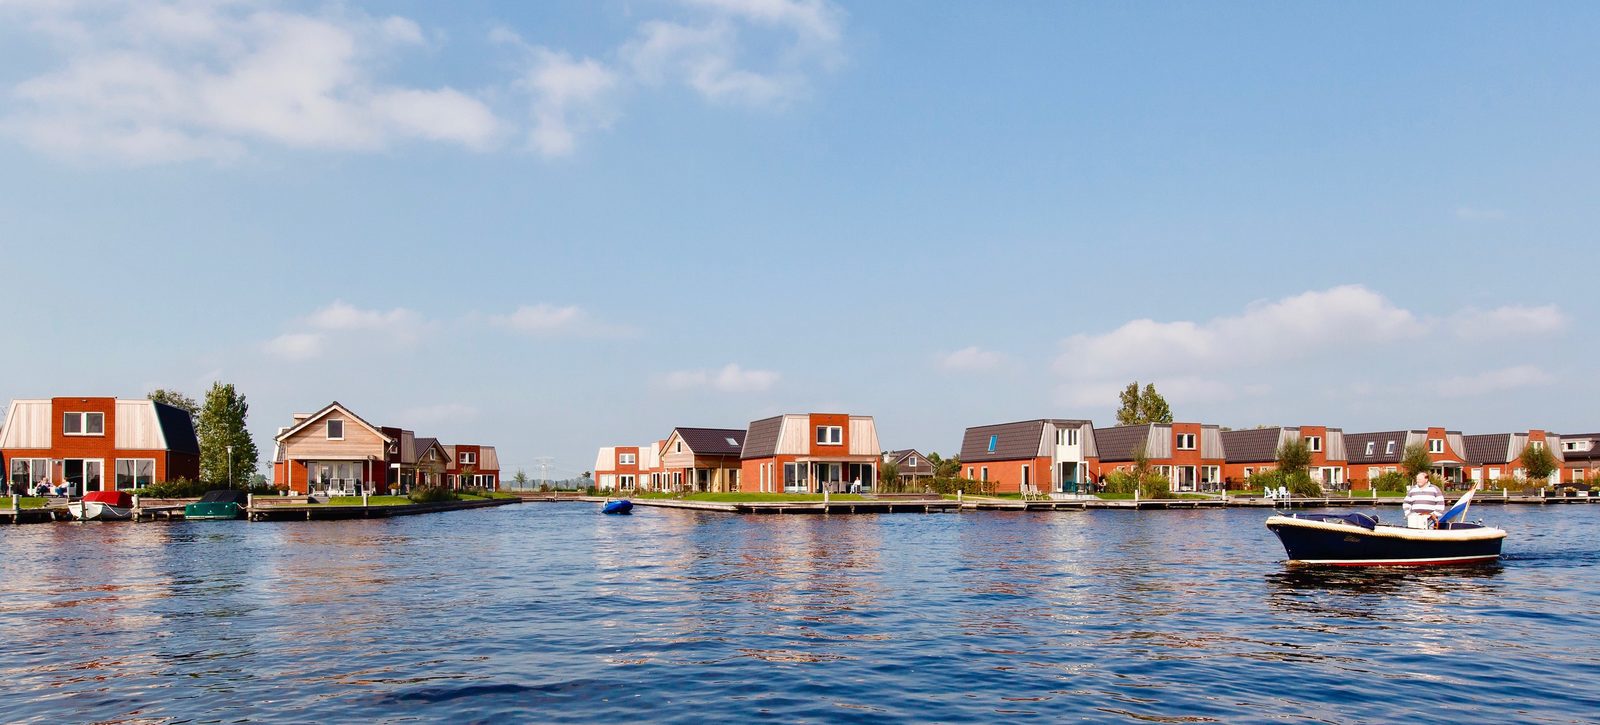   Recreatiewoning kopen Friesland aan het water